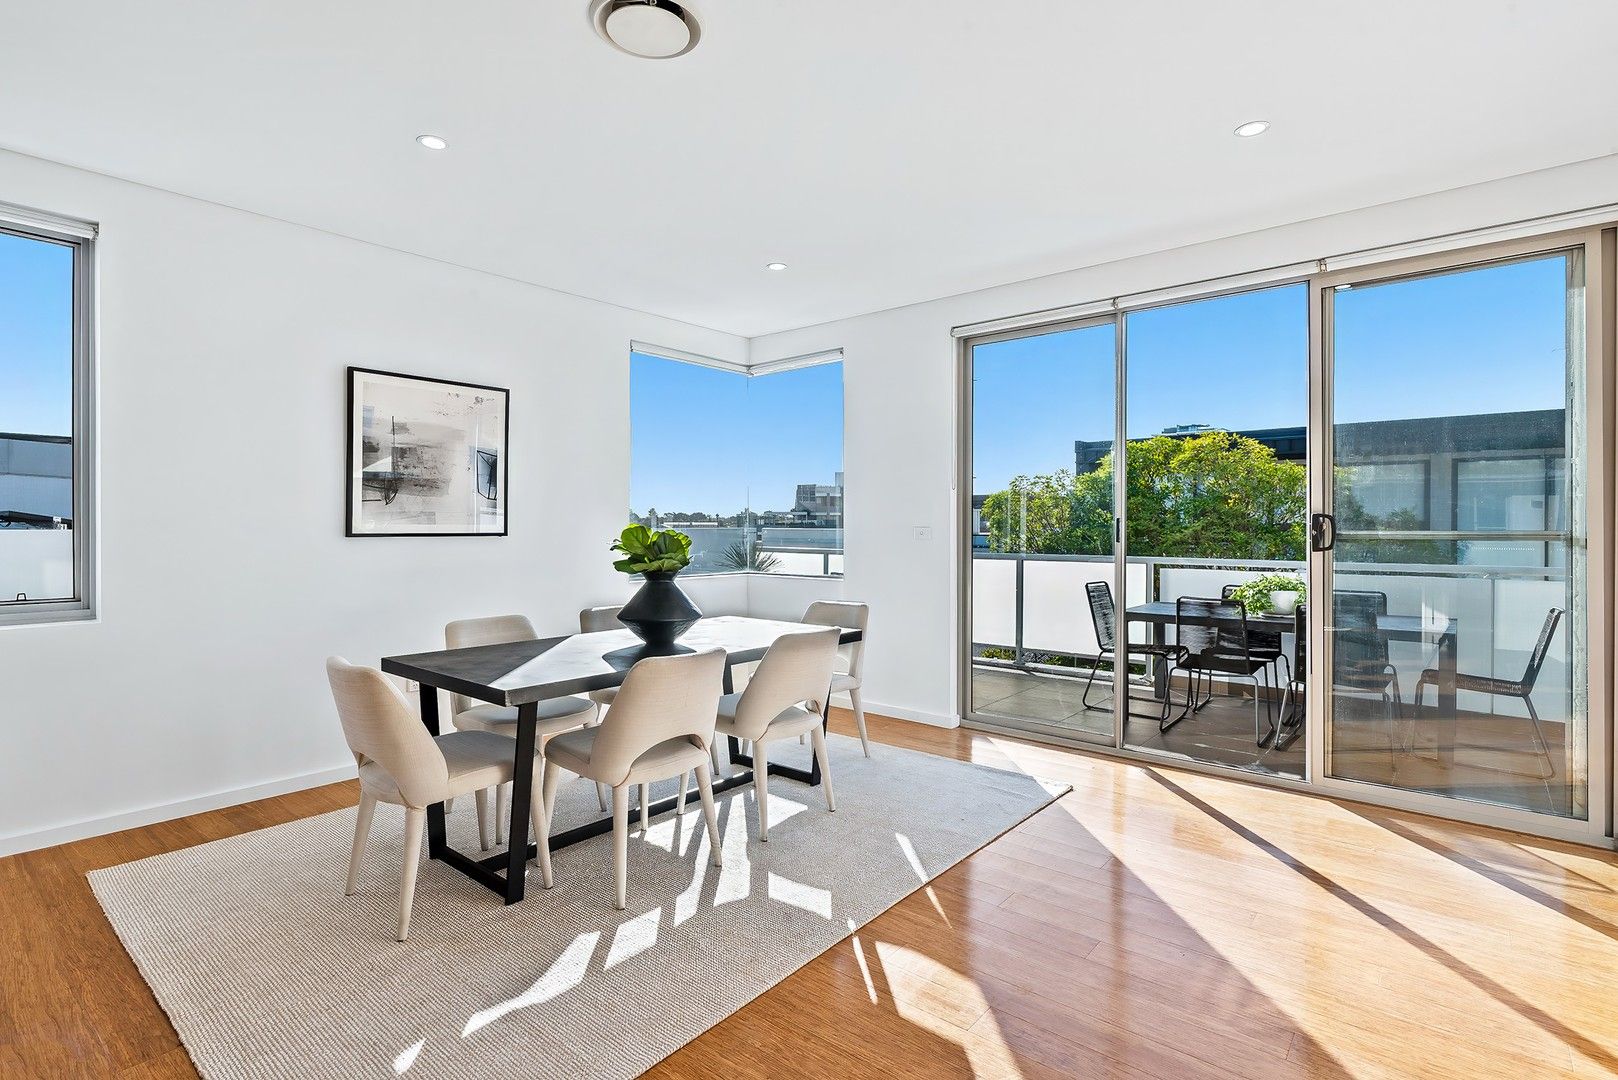 2 bedrooms Apartment / Unit / Flat in 12/15-17 Marsden Street CAMPERDOWN NSW, 2050